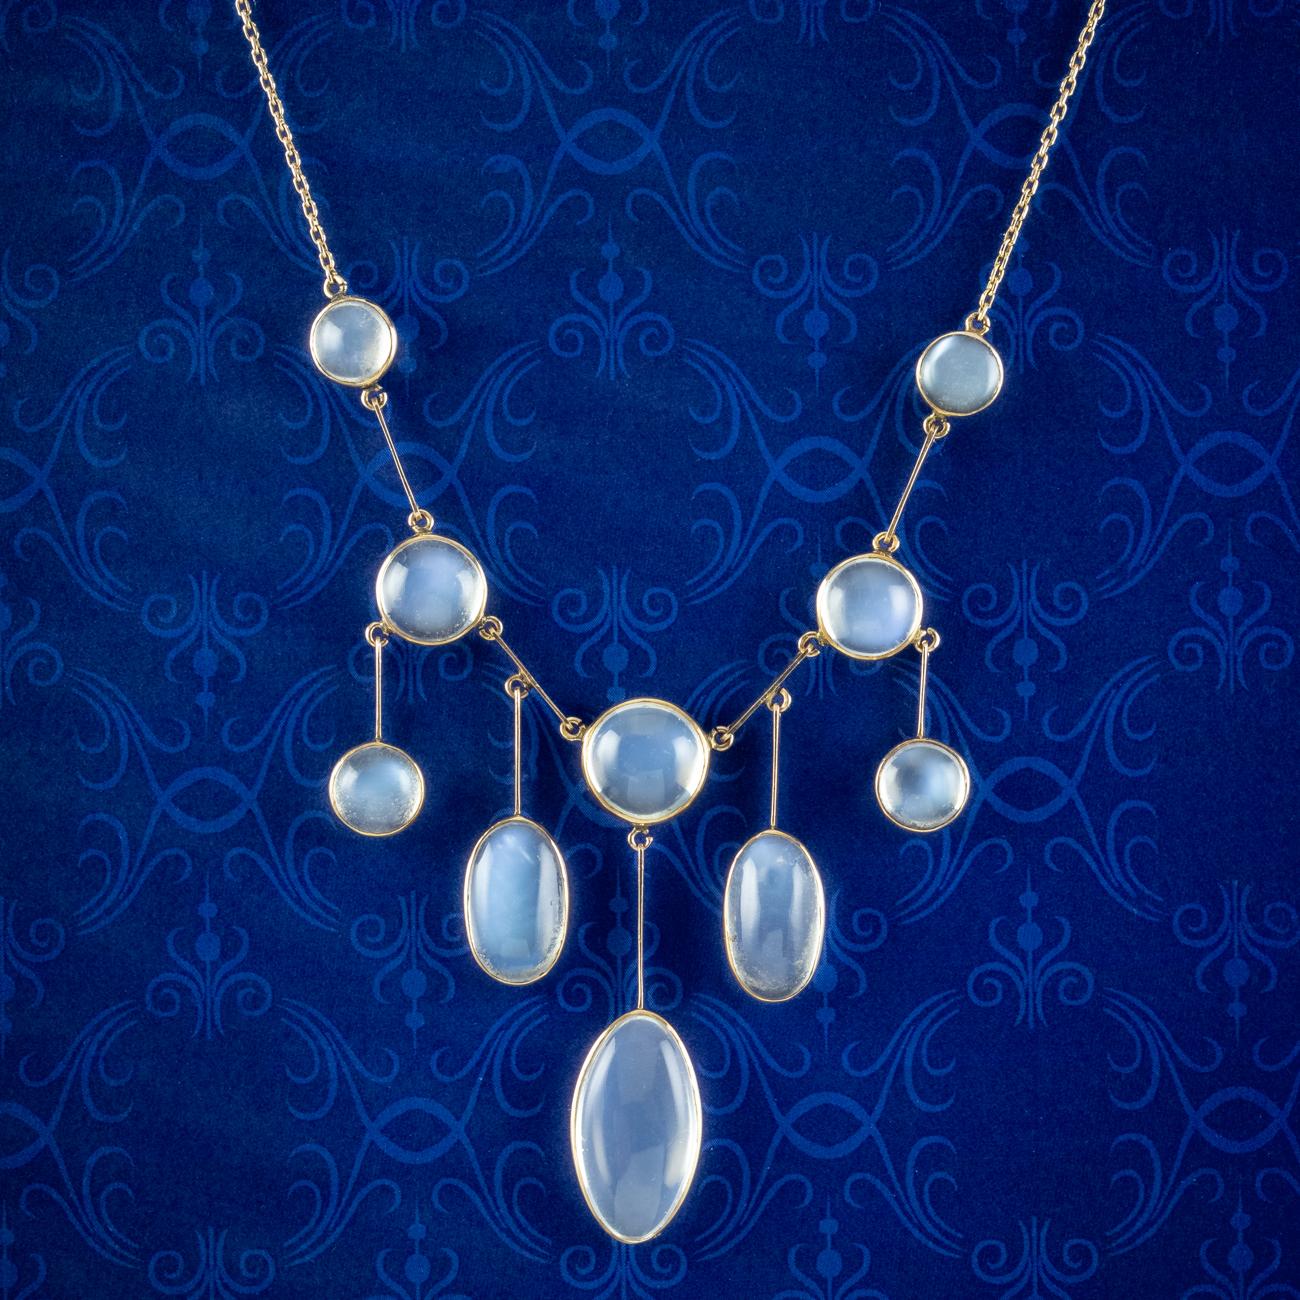 Eine bezaubernde antike viktorianische Halskette mit zehn faszinierenden Cabochon-Mondsteinen und einem geisterhaften blauen Schiller. Sie reichen von 1 bis 8 Karat und sind in der Lünette entlang fünf abgestufter Tropfen am unteren Ende